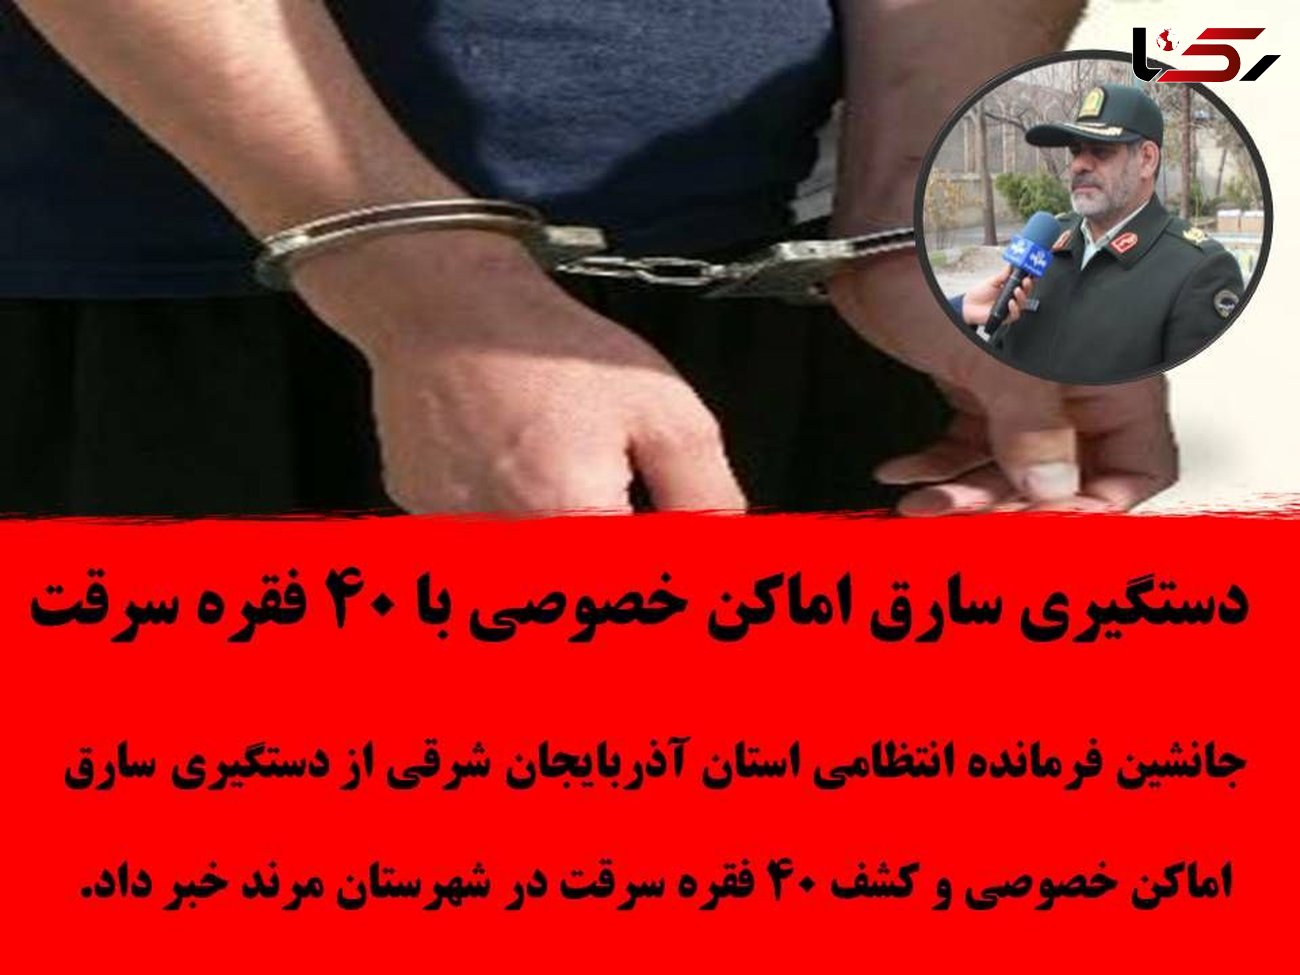 دستگیری سارق اماکن خصوصی با 40 فقره سرقت